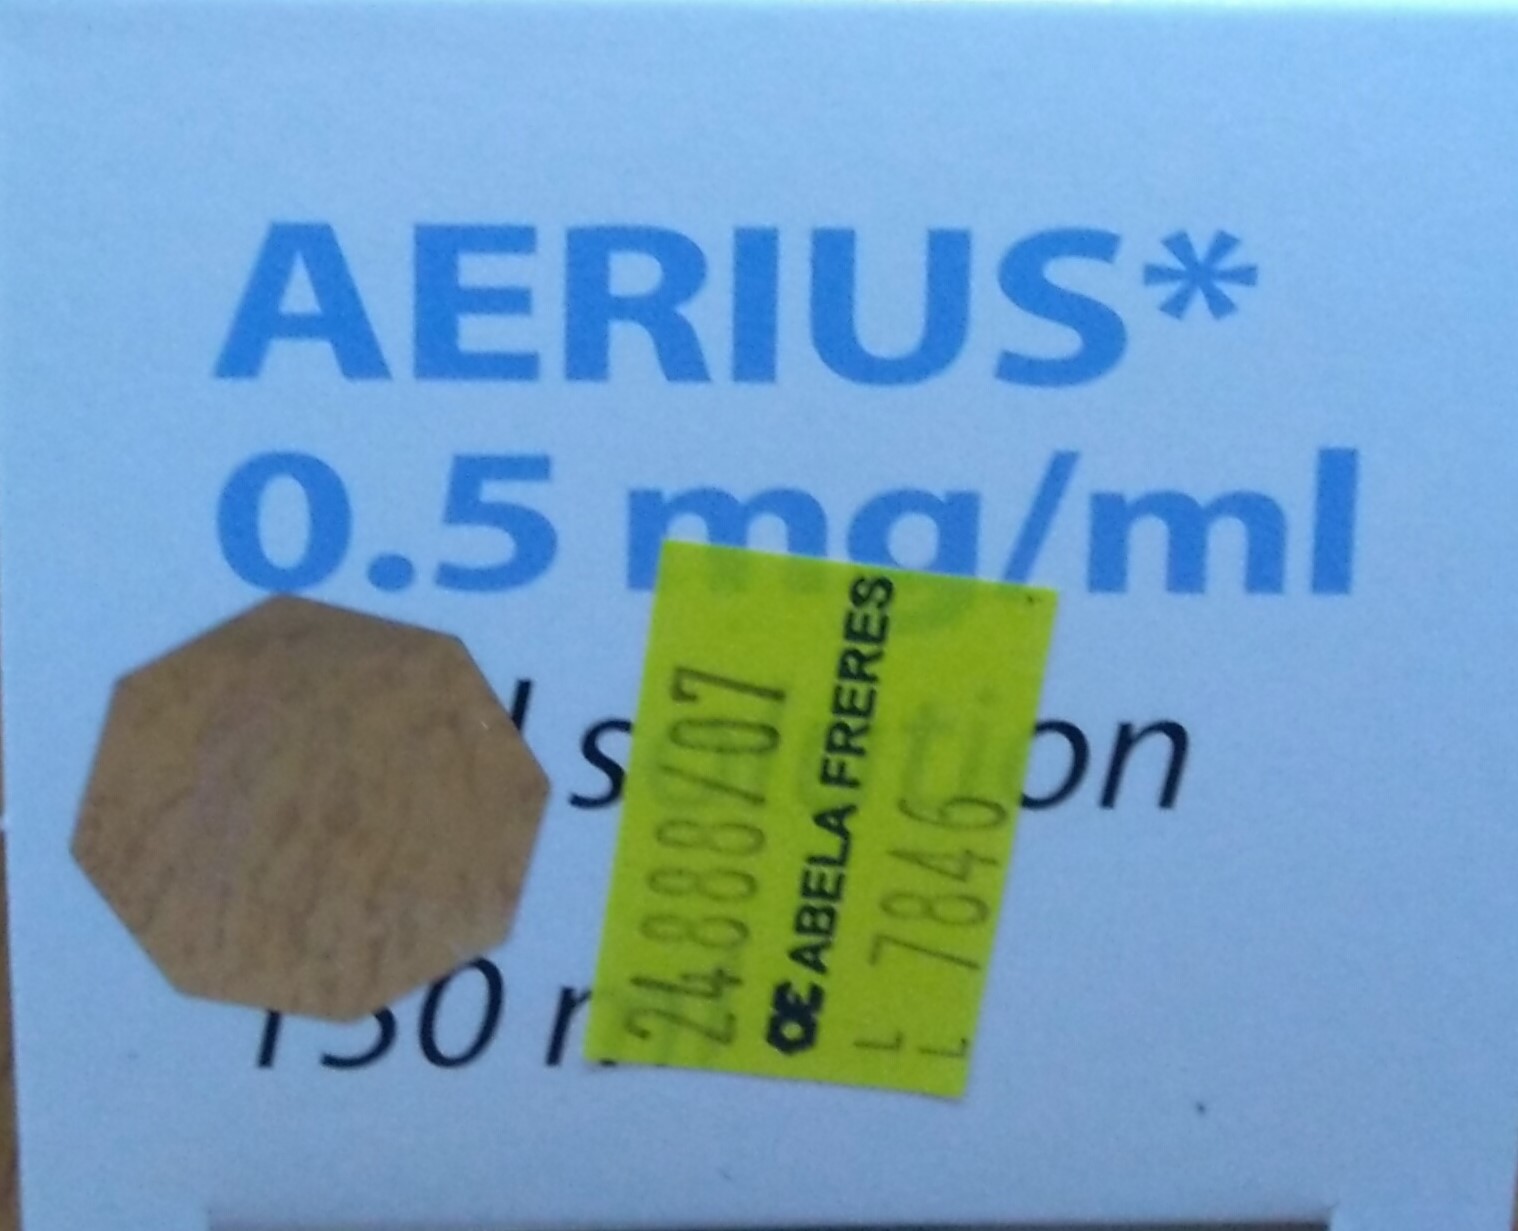 Aerius Oral Solution